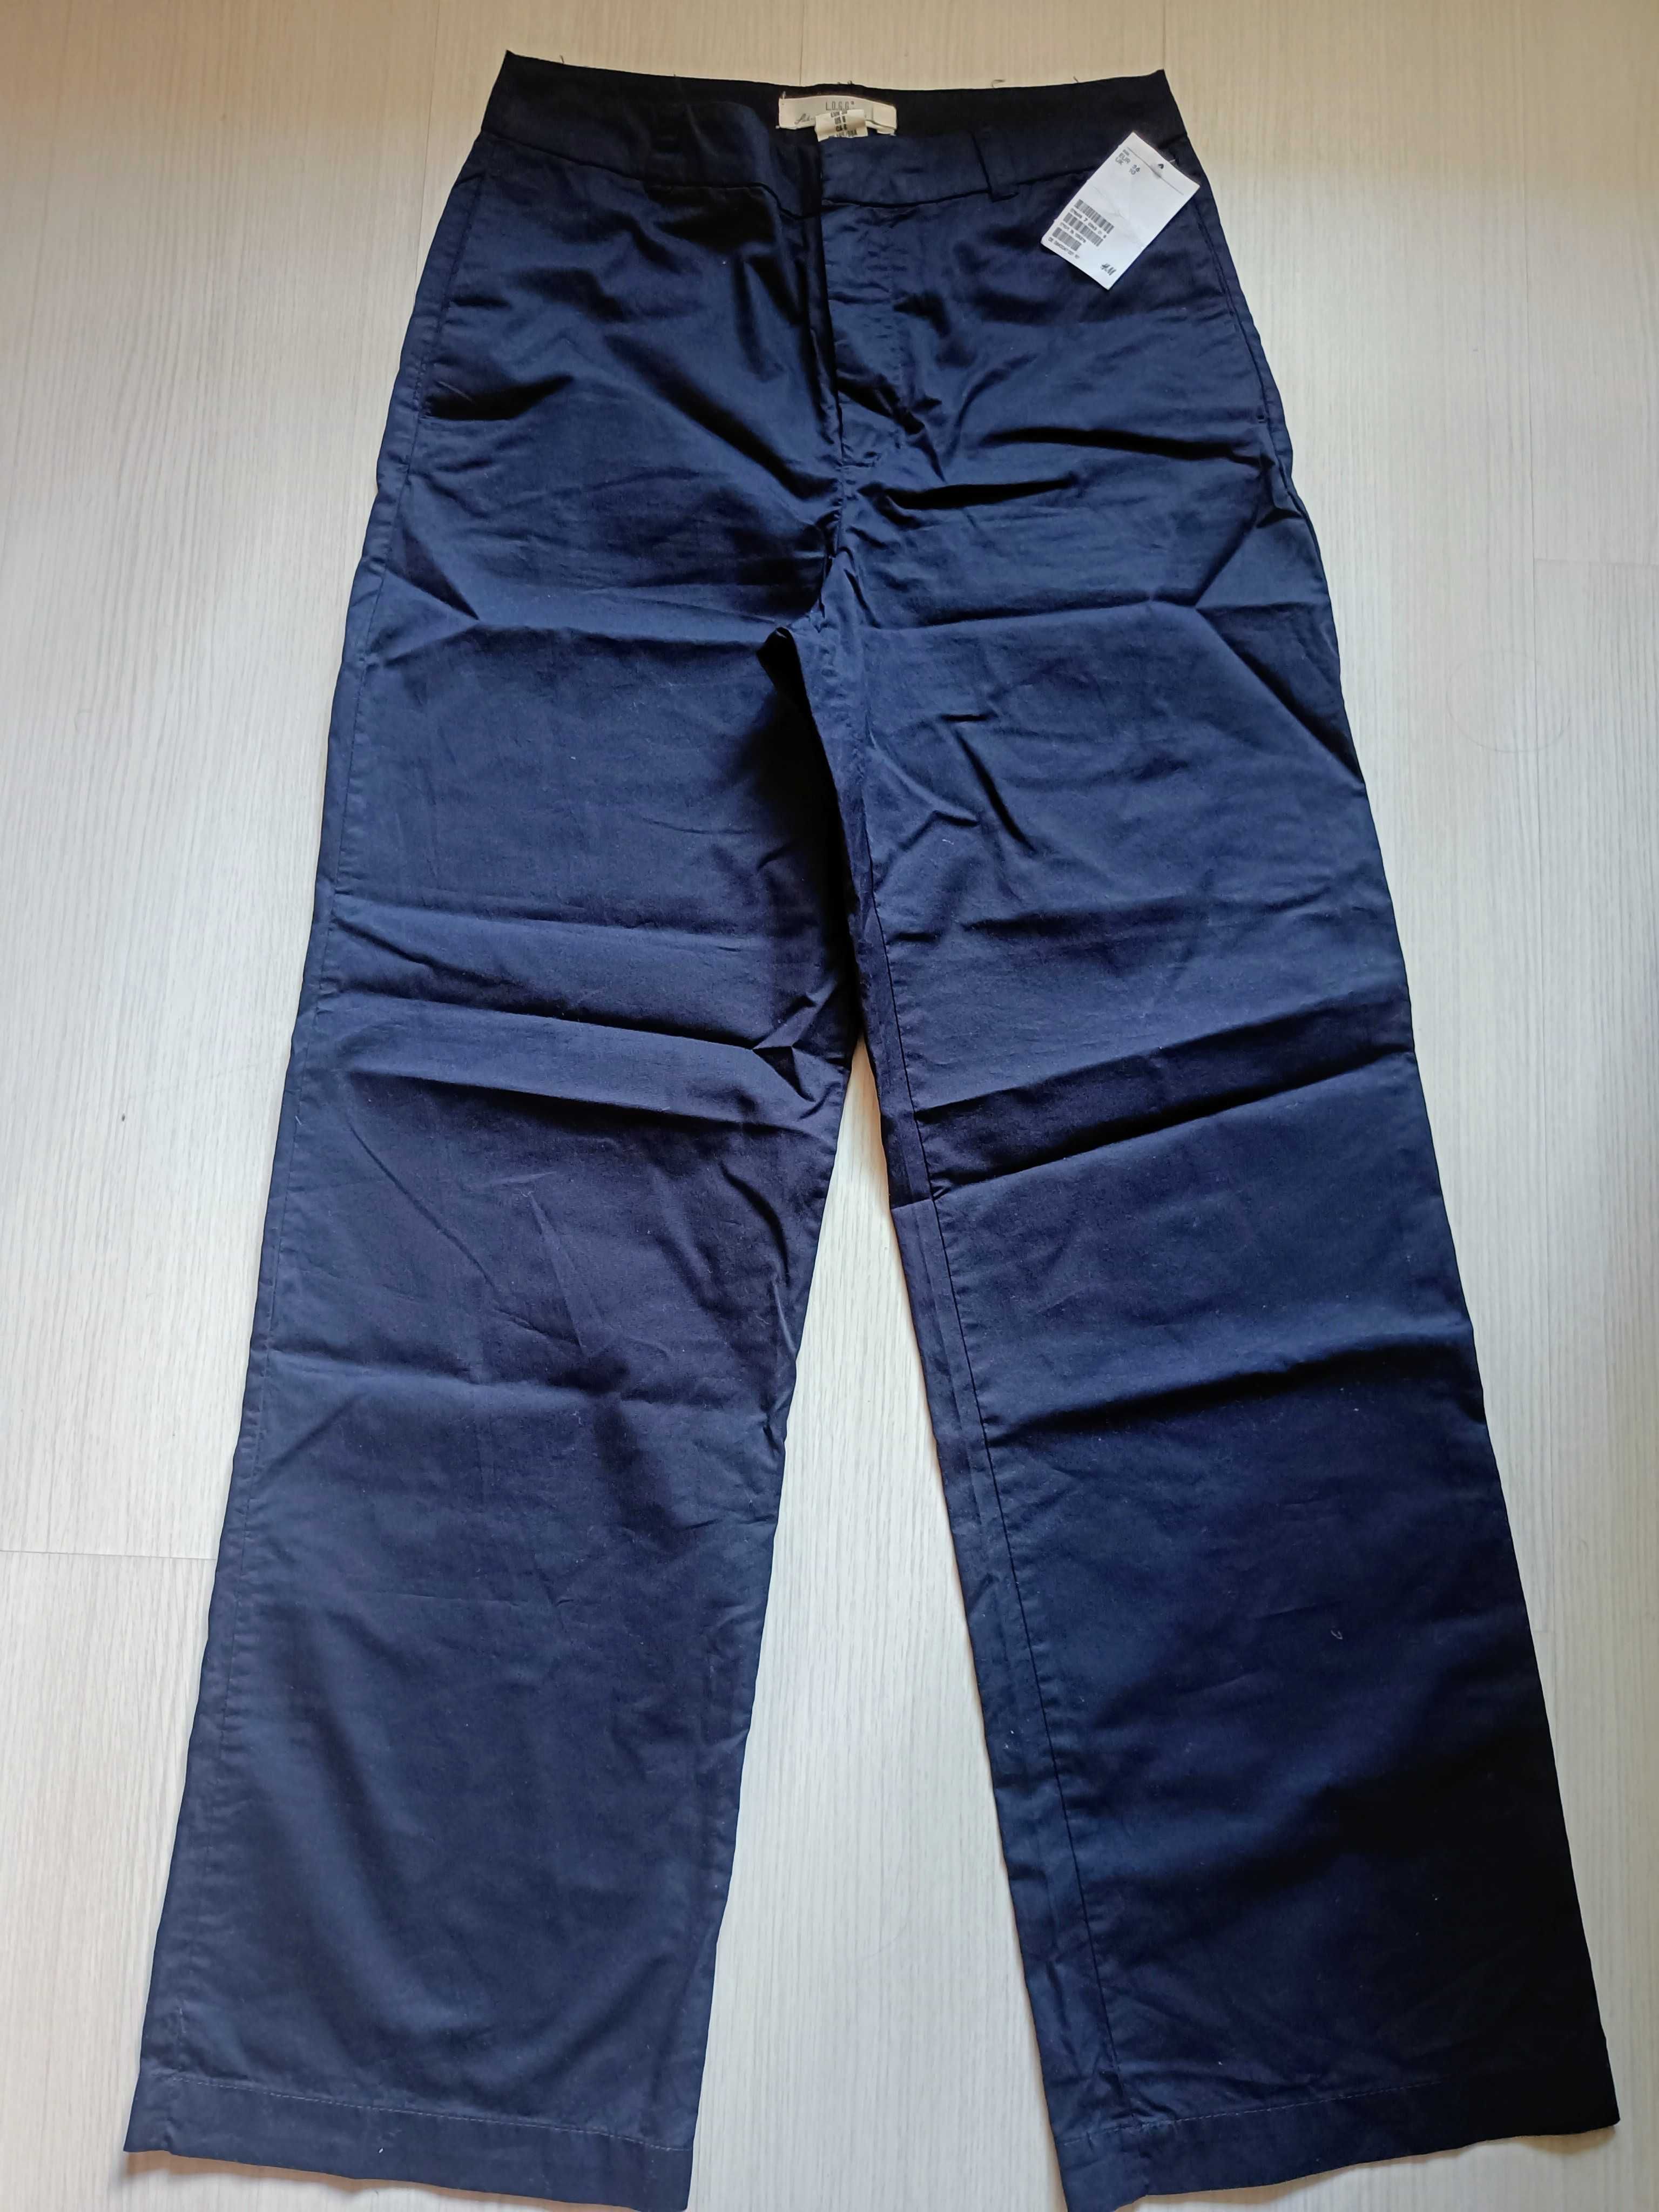 Памучен тъмно син панталон H&M, размер 36